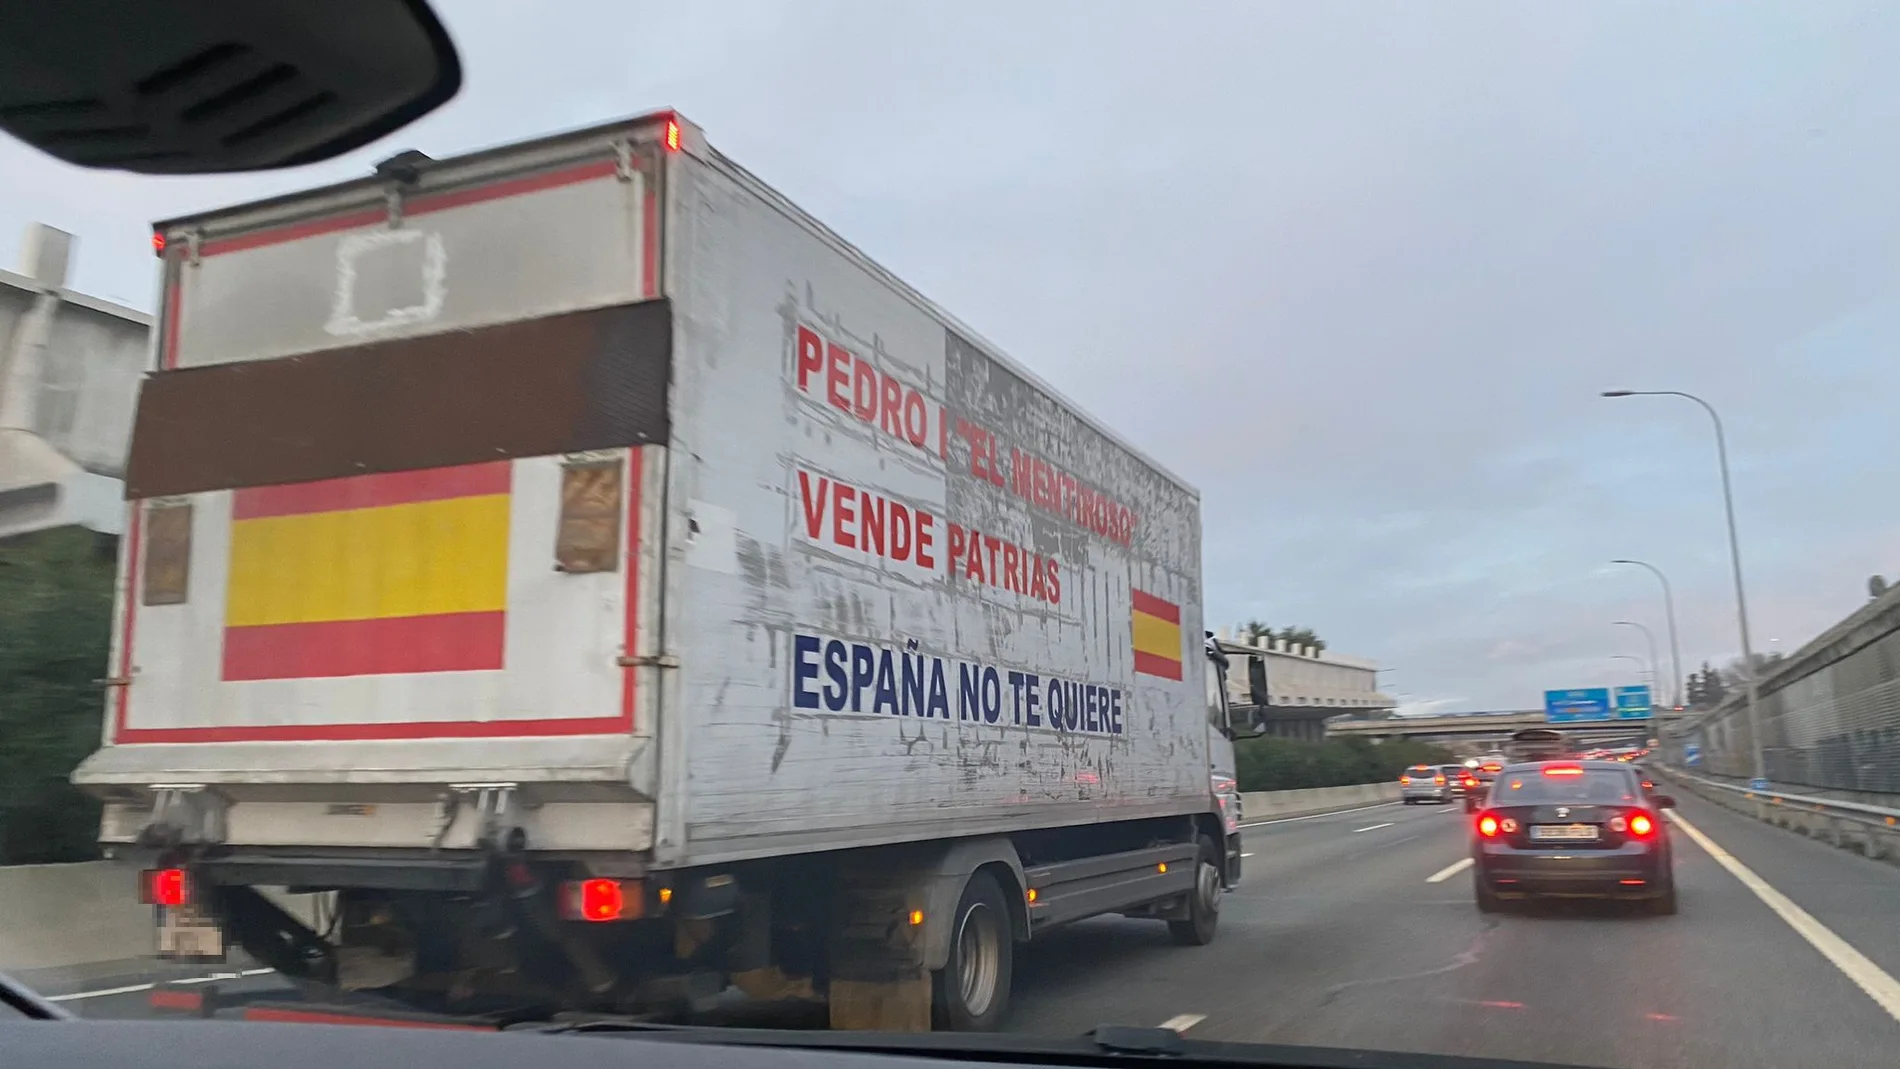 Uno de los mensajes contra Pedro sánchez, que pueden leerse en los laterales del camión